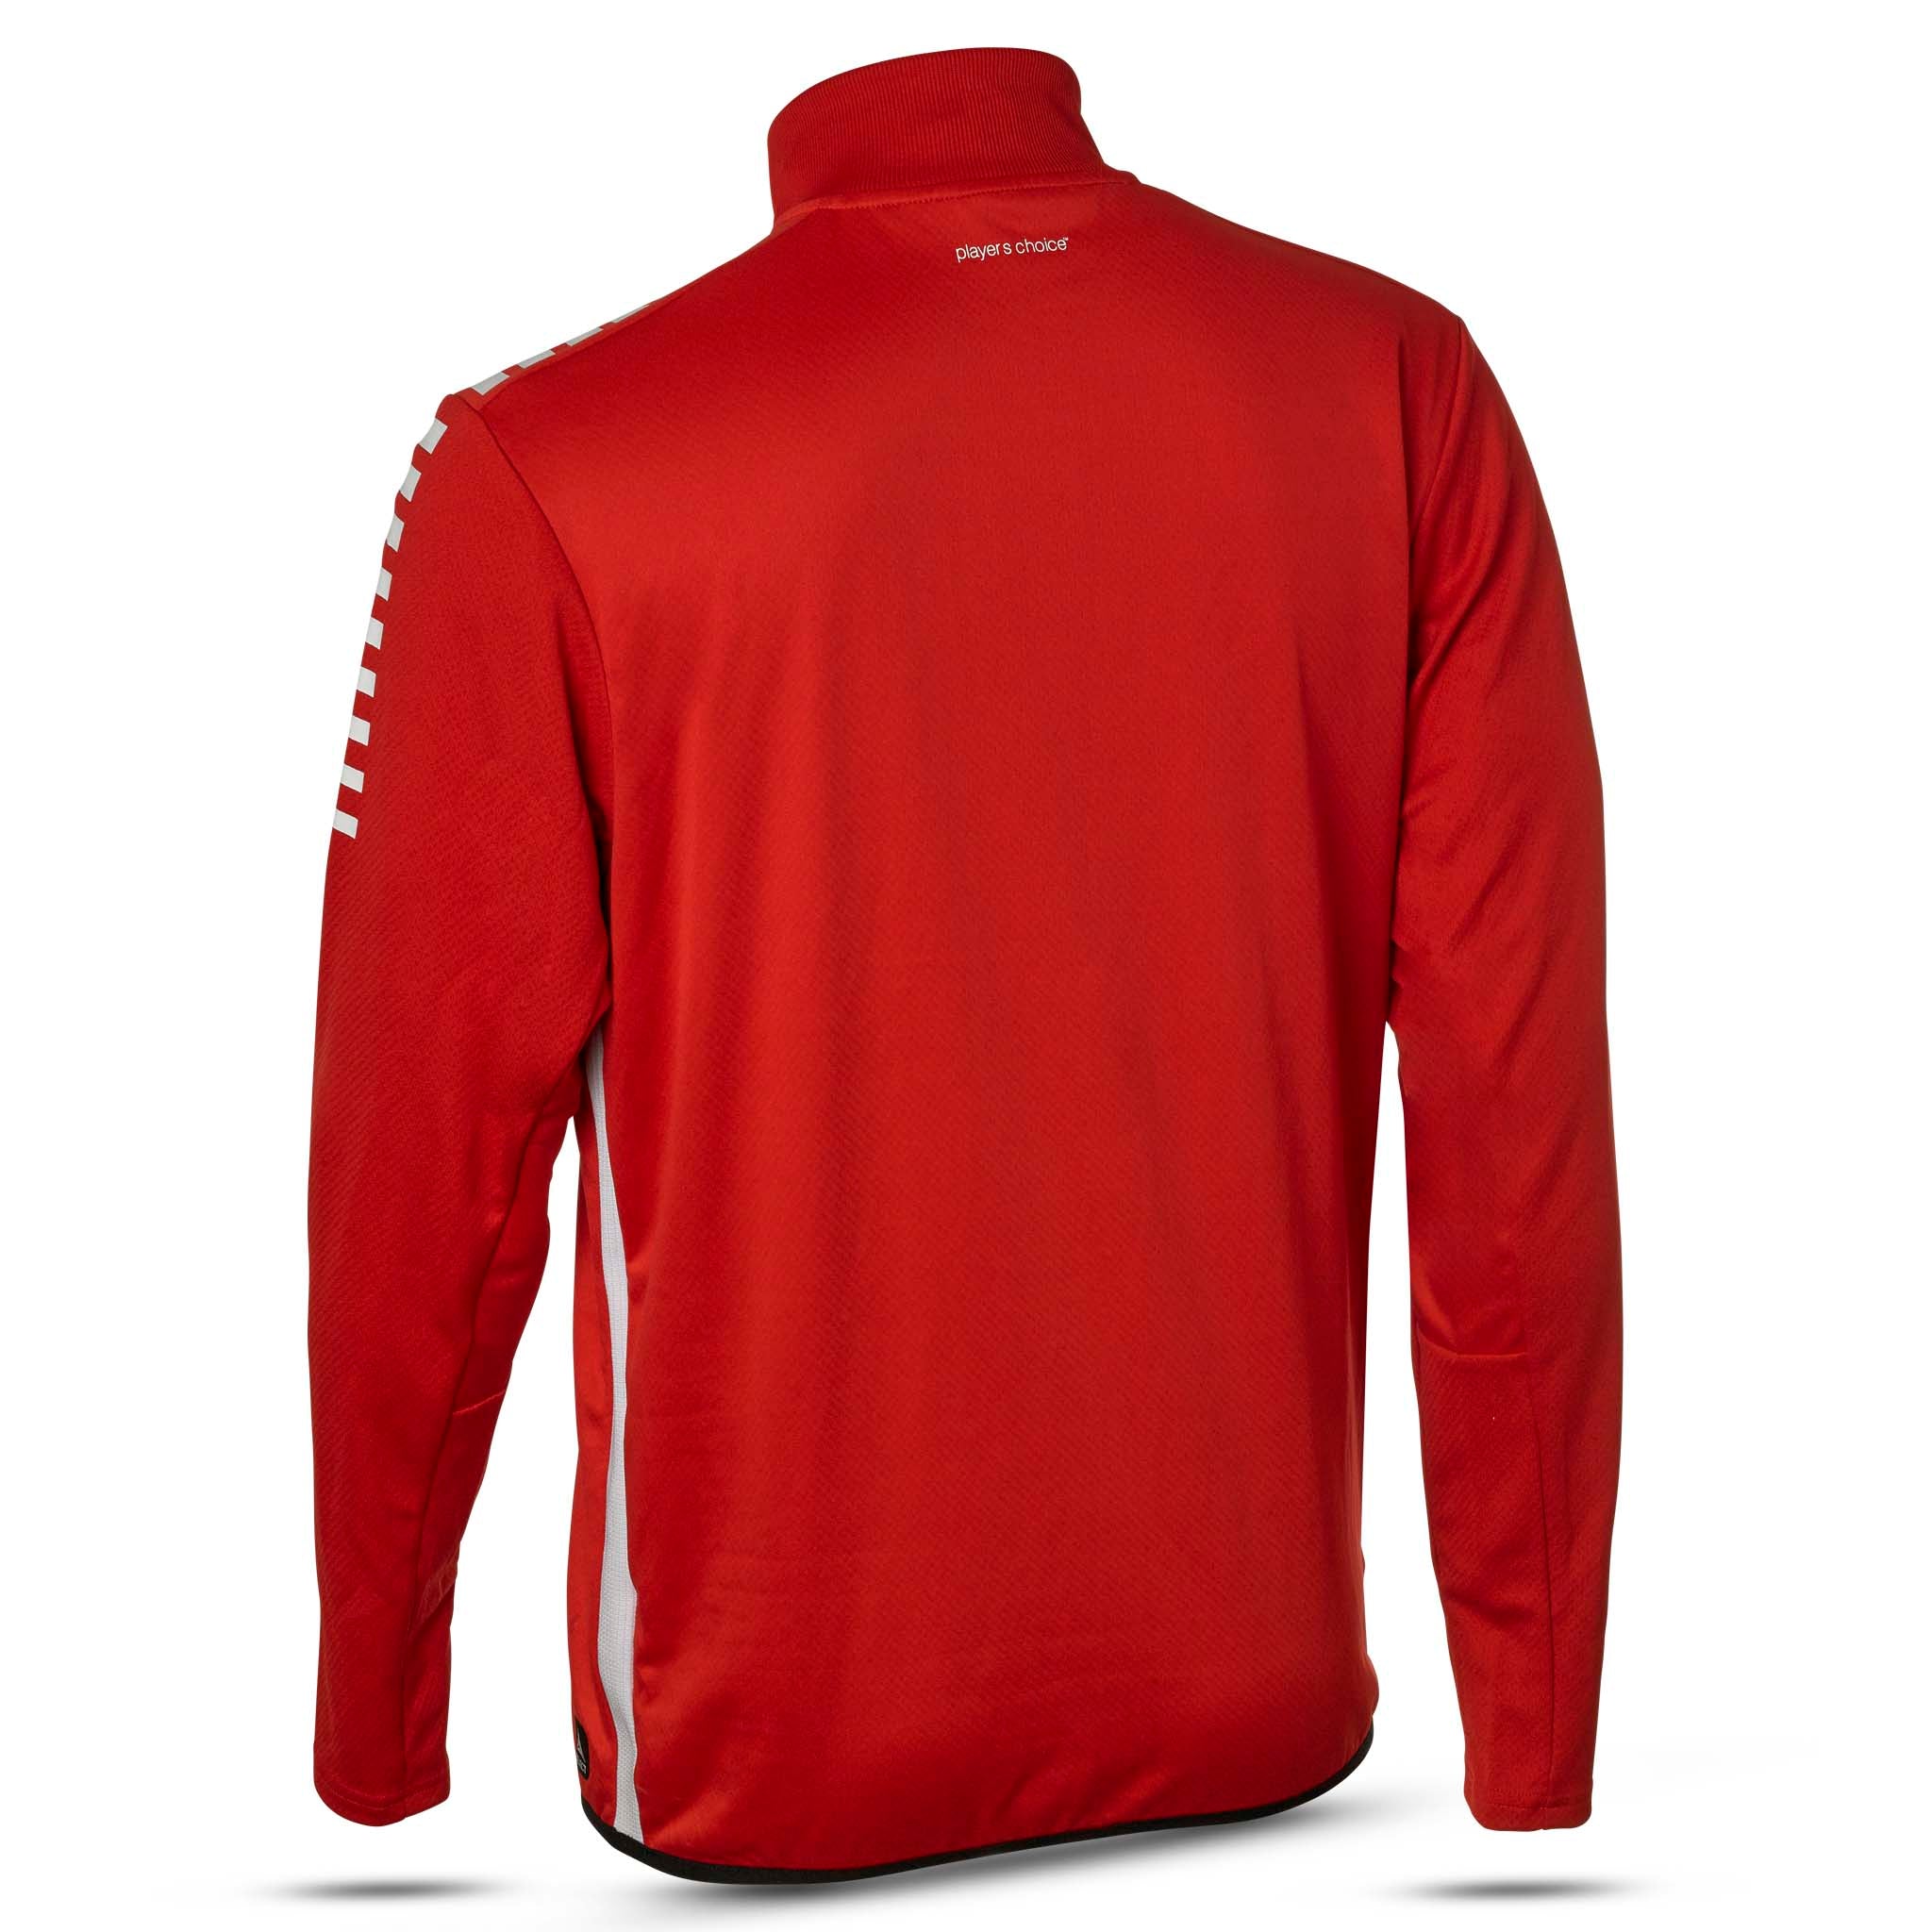 Sweatshirt för träning - Monaco #färg_röd